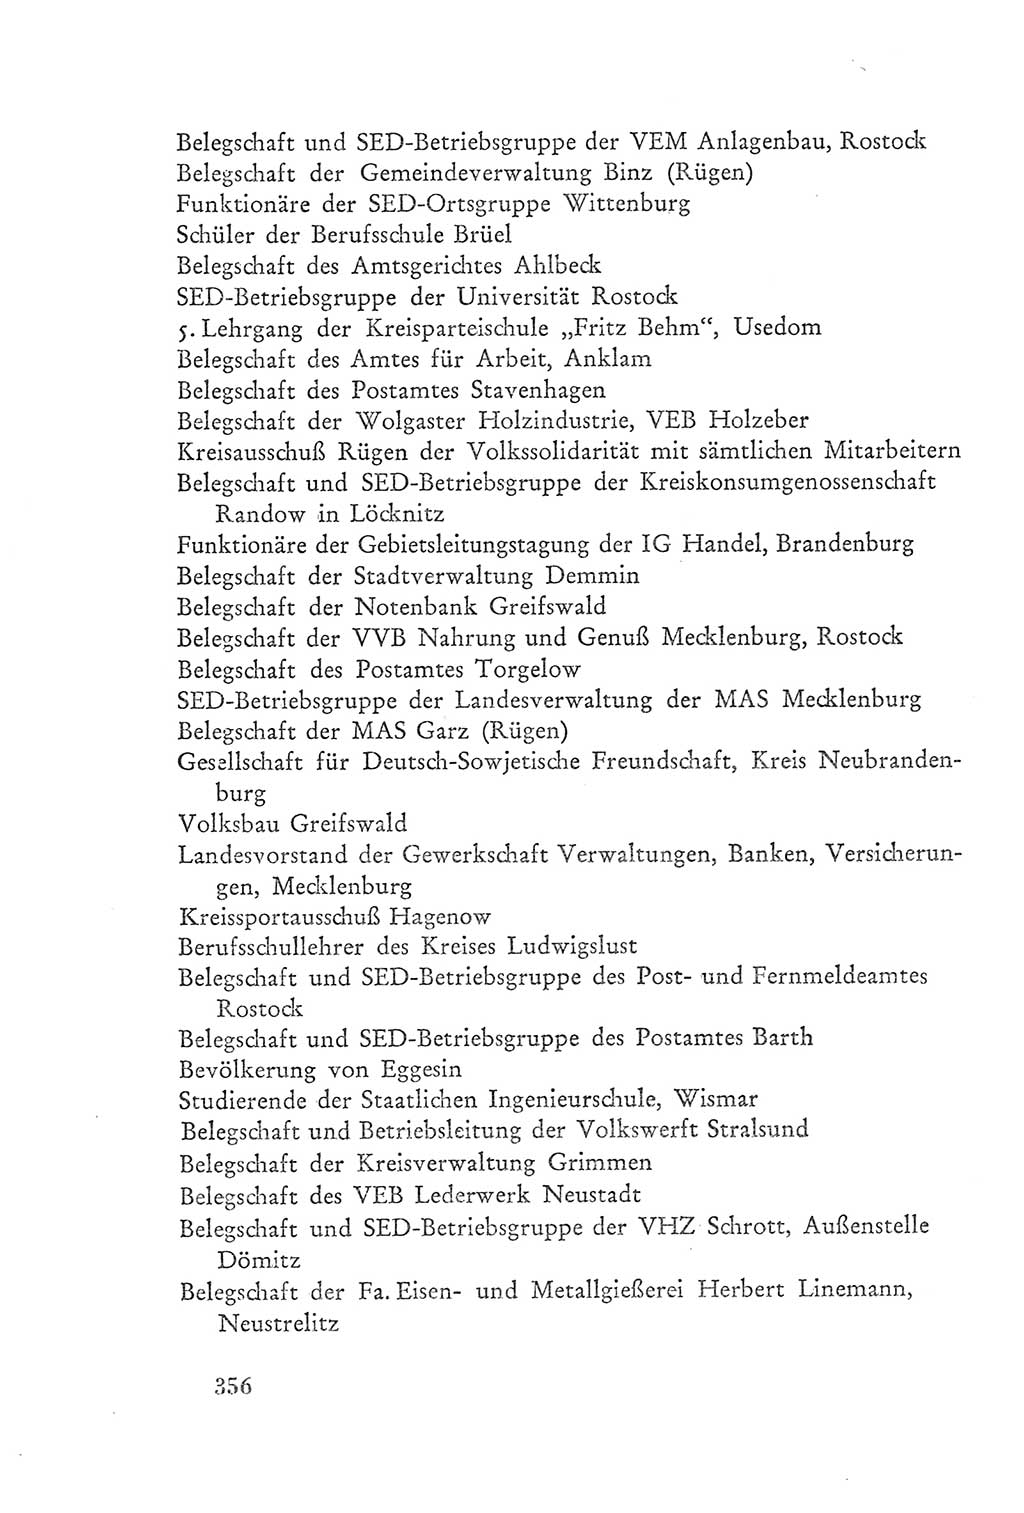 Protokoll der Verhandlungen des Ⅲ. Parteitages der Sozialistischen Einheitspartei Deutschlands (SED) [Deutsche Demokratische Republik (DDR)] 1950, Band 2, Seite 356 (Prot. Verh. Ⅲ. PT SED DDR 1950, Bd. 2, S. 356)